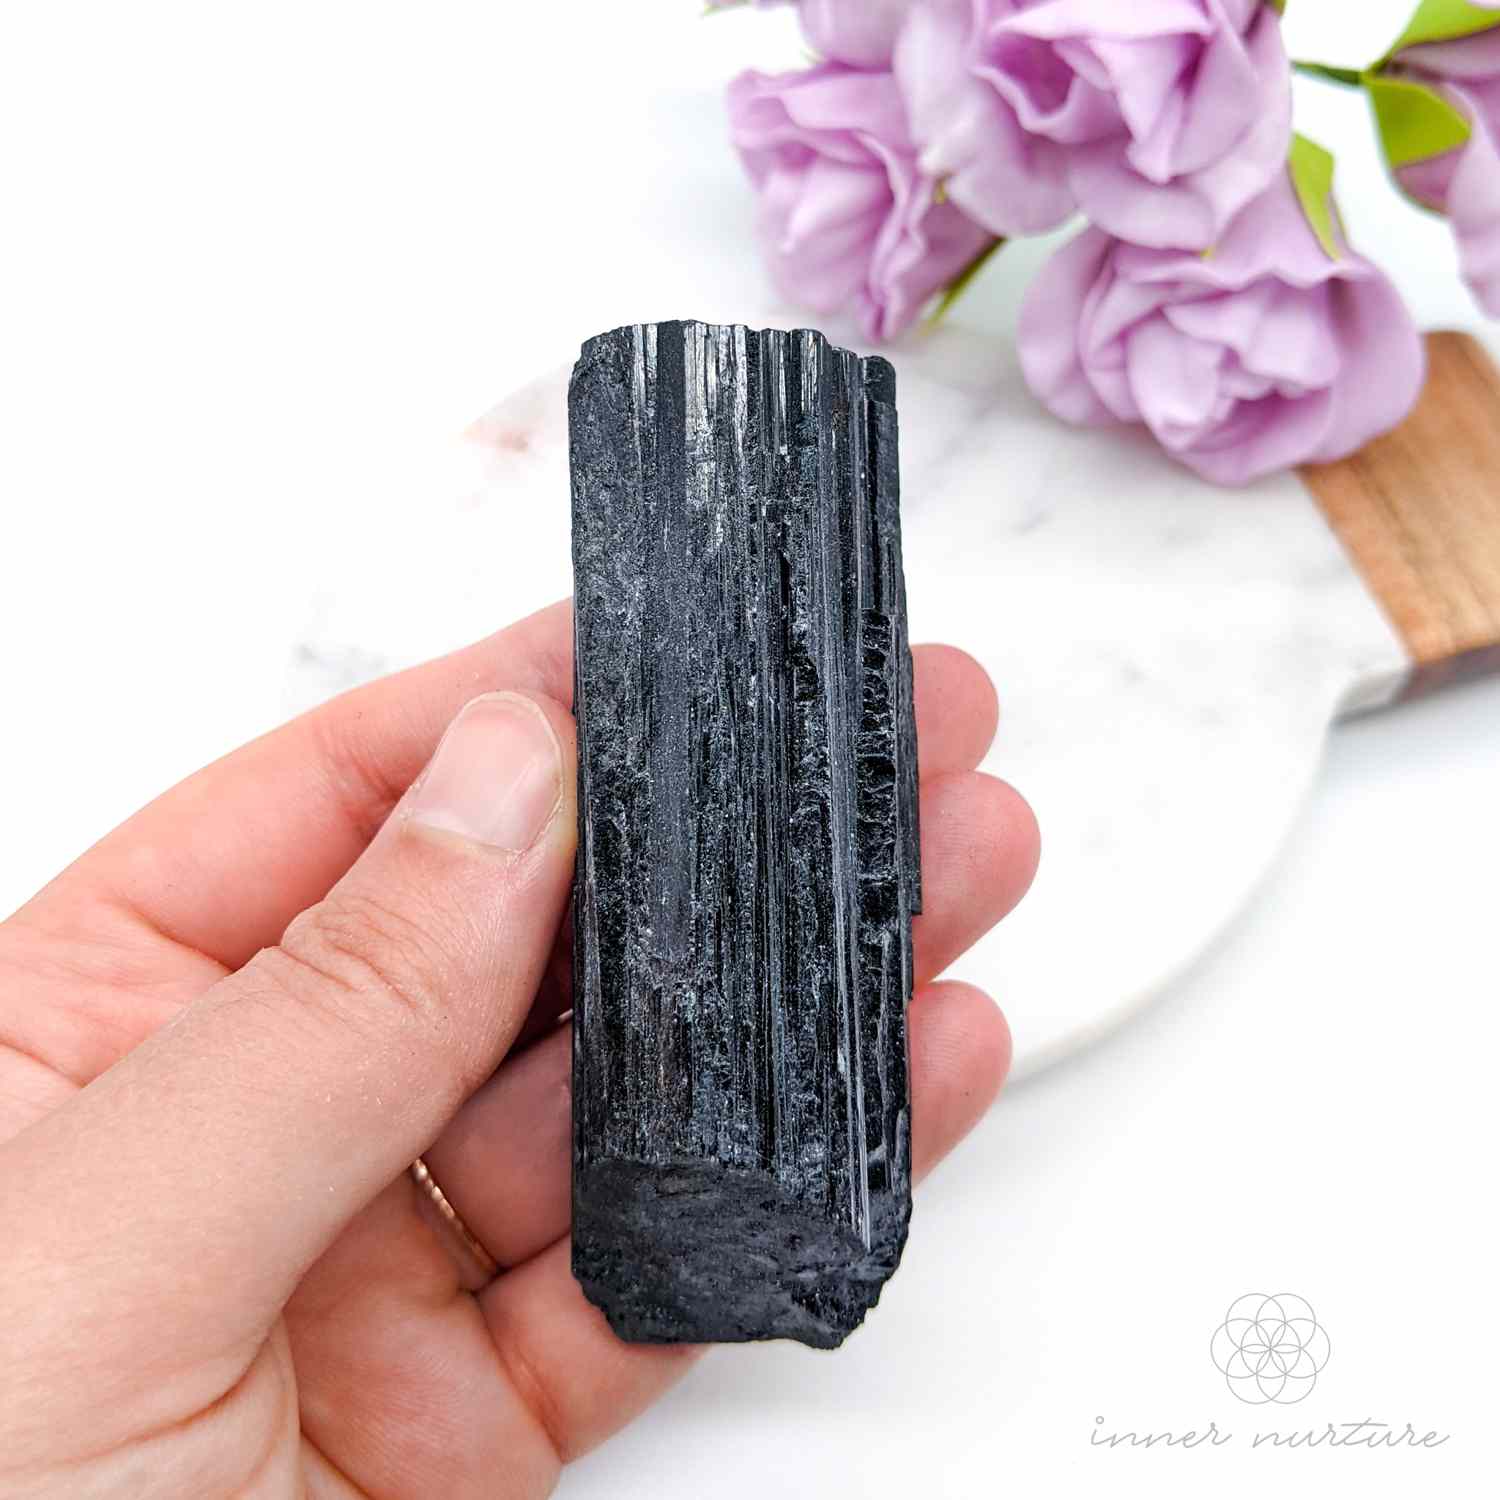 black tourmaline raw specimen - inner nurture online crystal shop